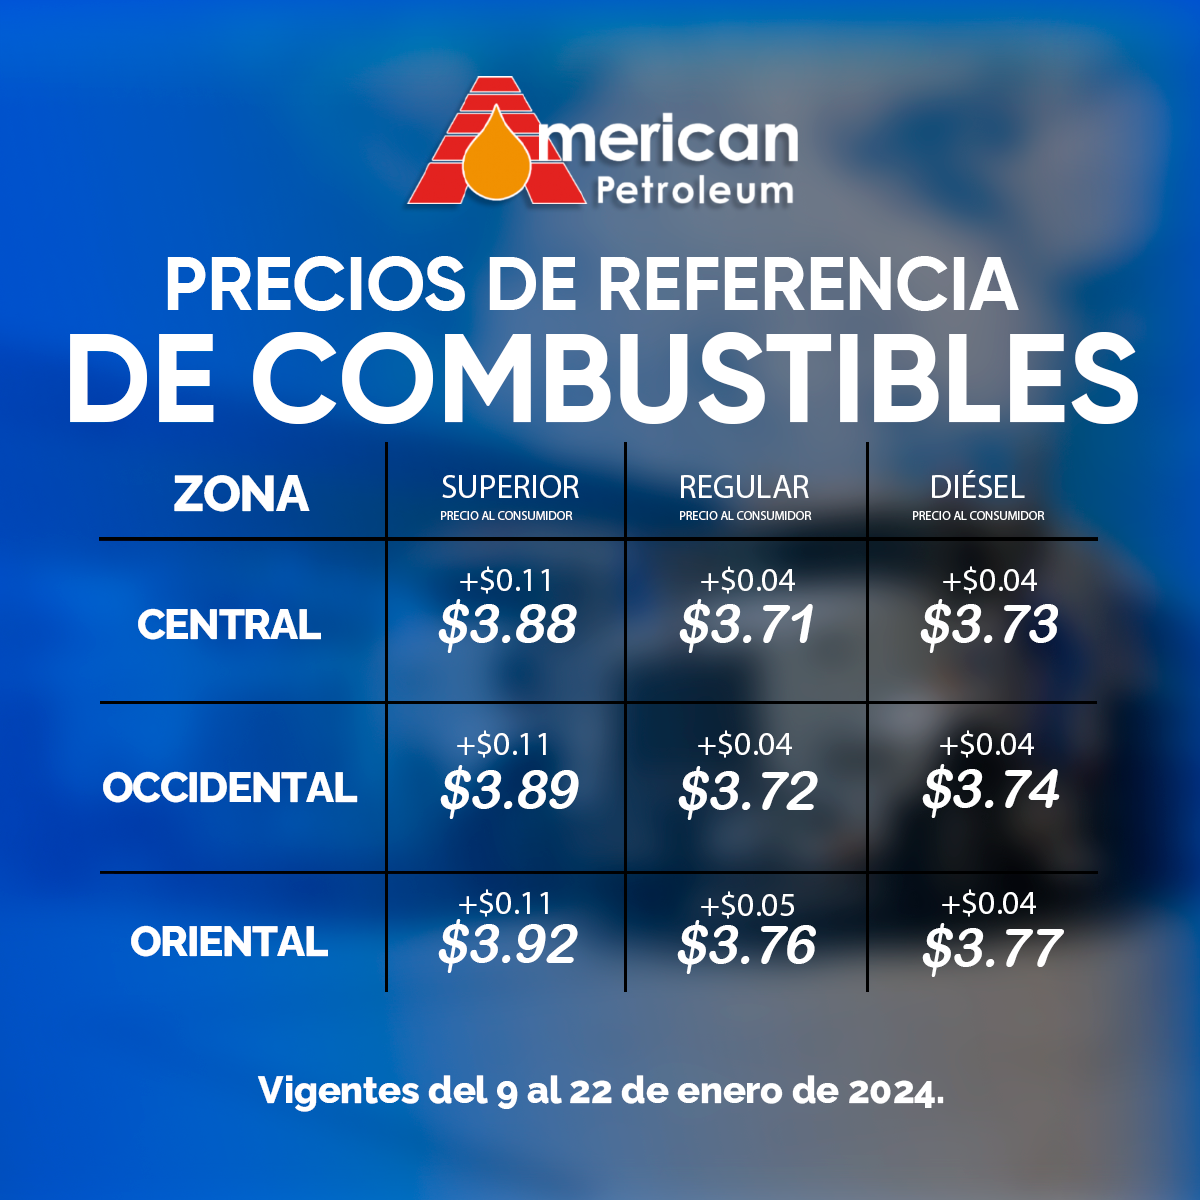 Precios de referencia del combustible en El Salvador, vigentes del 9 al 22 de enero de 2024.